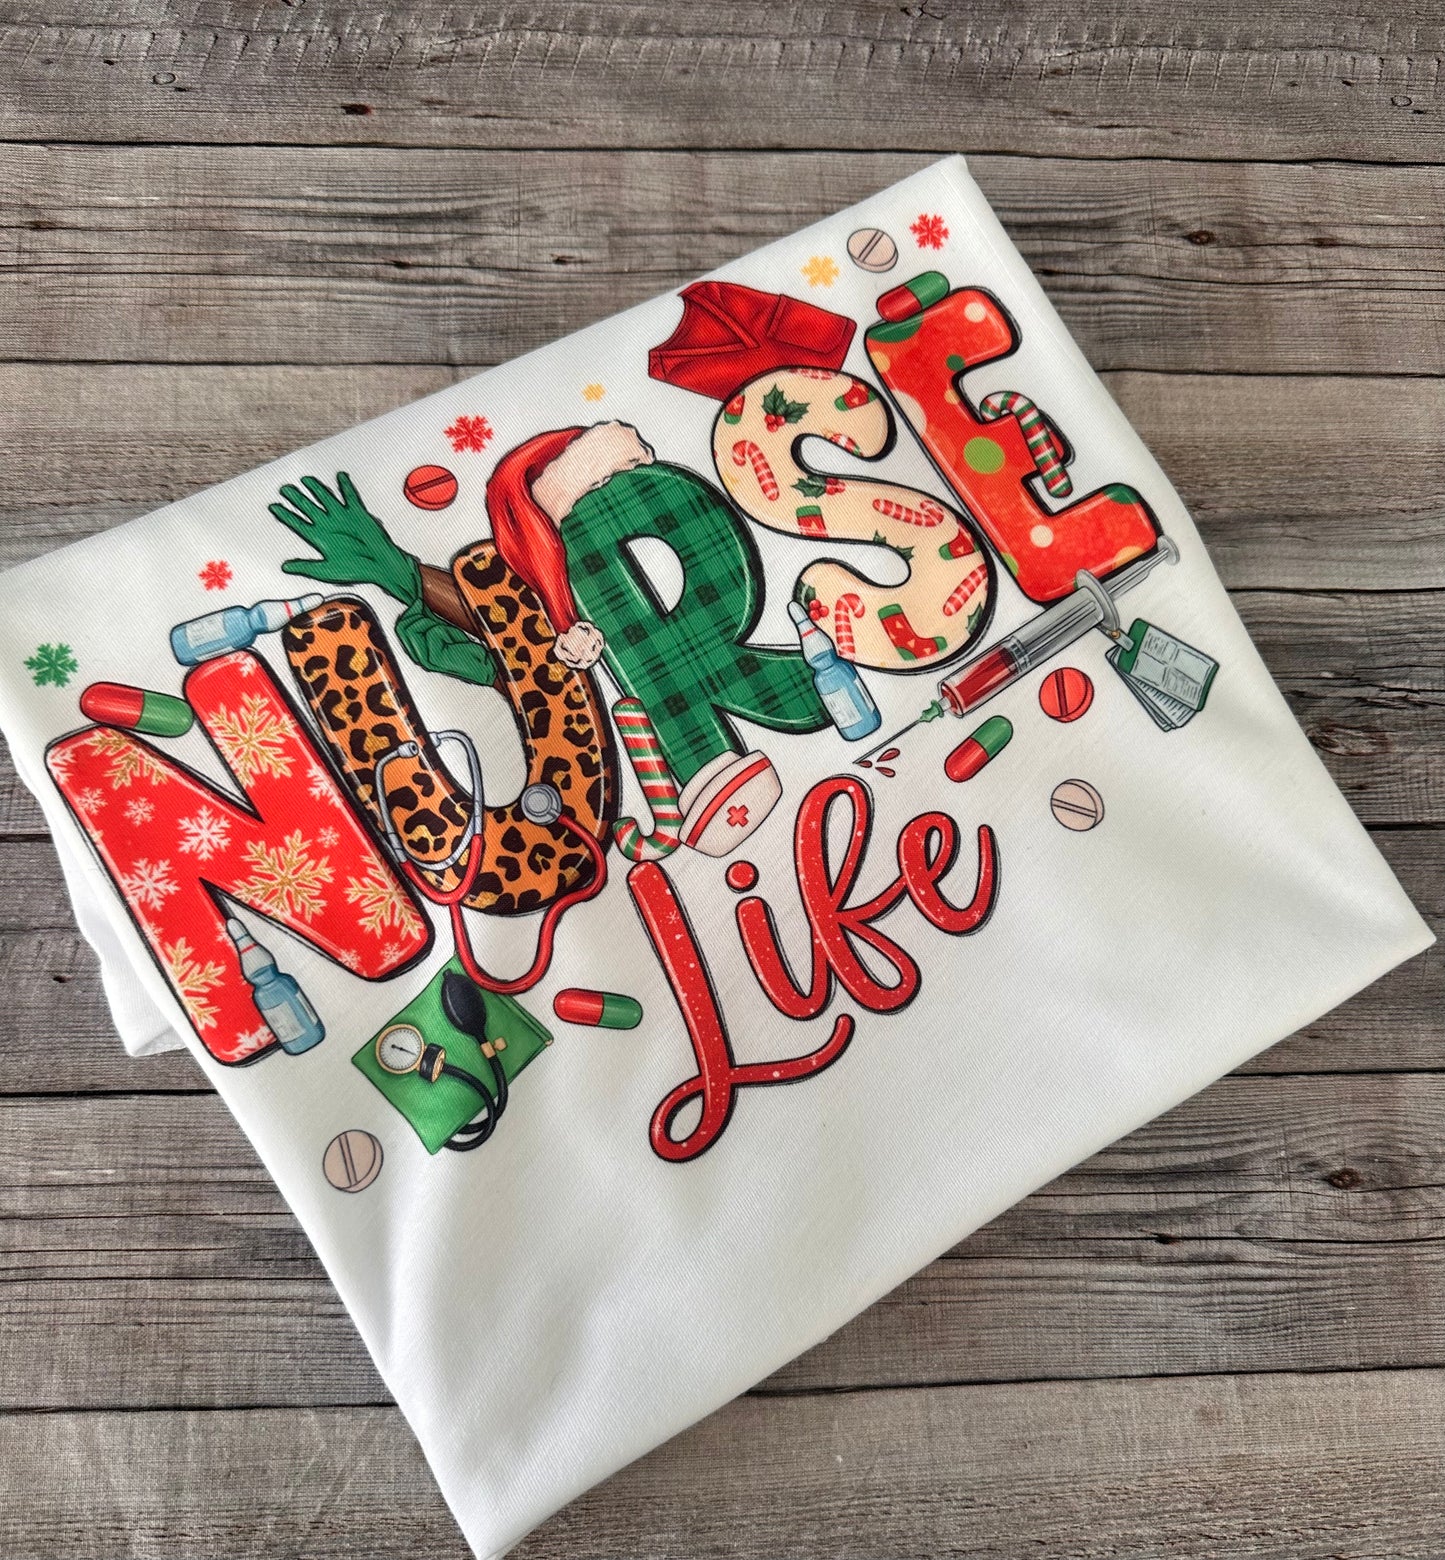 Nurse Life Christmas shirt